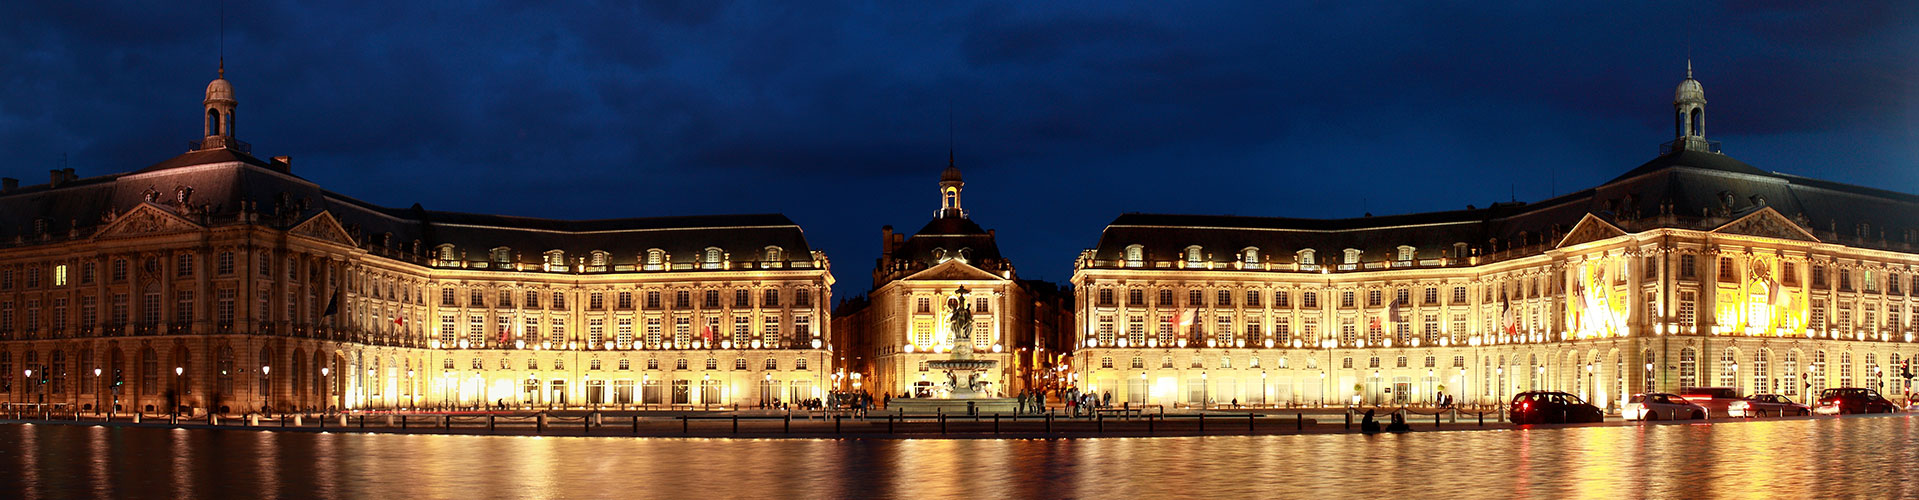 The Place de la Bourse in Bordeaux, France, lit up at night.